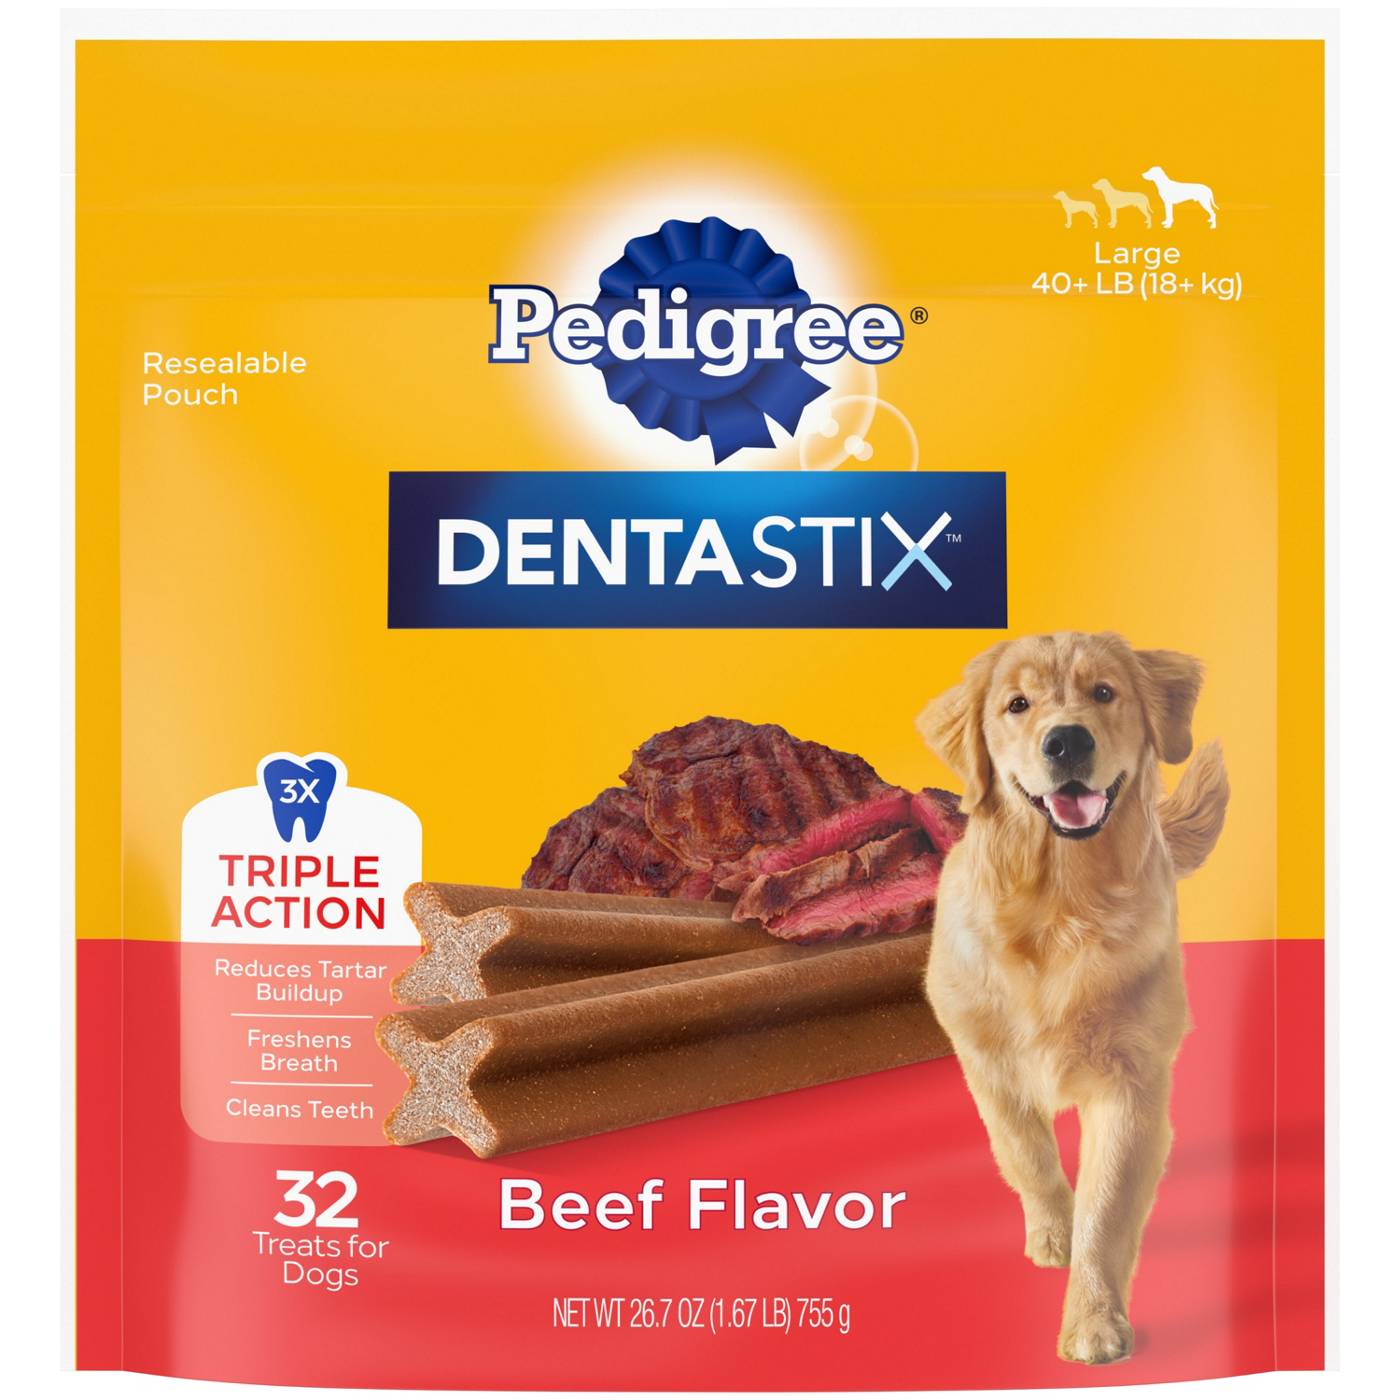 Pedigree DENTASTIX Triple Action Beef Flavor, Large; image 1 of 5